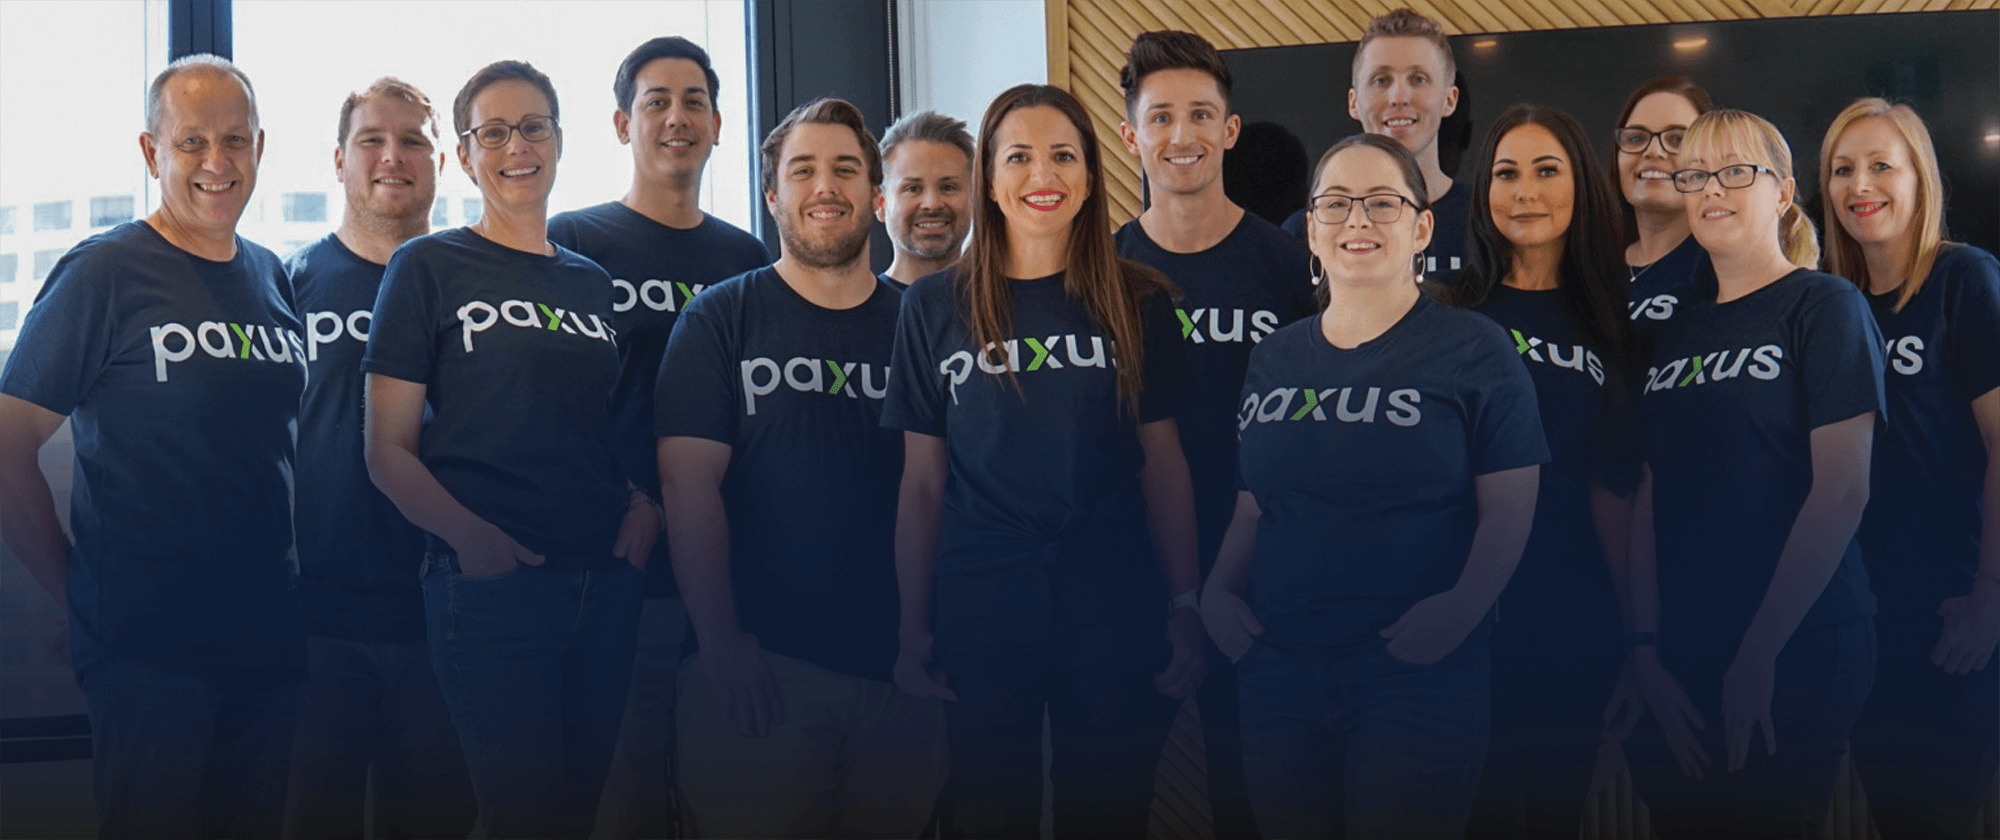 Paxus team